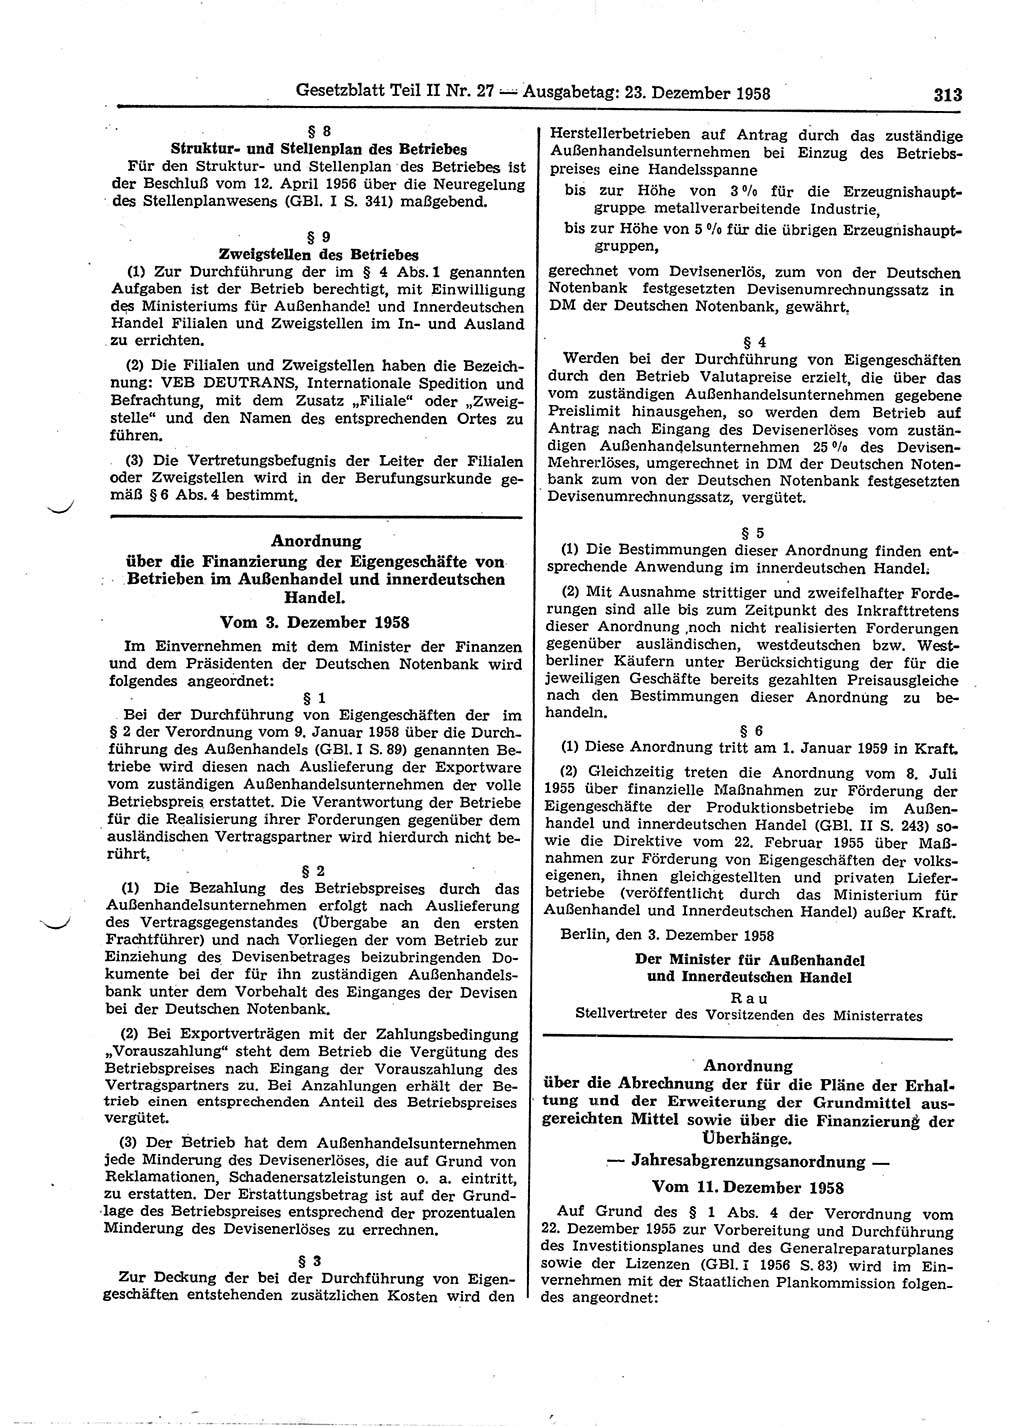 Gesetzblatt (GBl.) der Deutschen Demokratischen Republik (DDR) Teil ⅠⅠ 1958, Seite 313 (GBl. DDR ⅠⅠ 1958, S. 313)